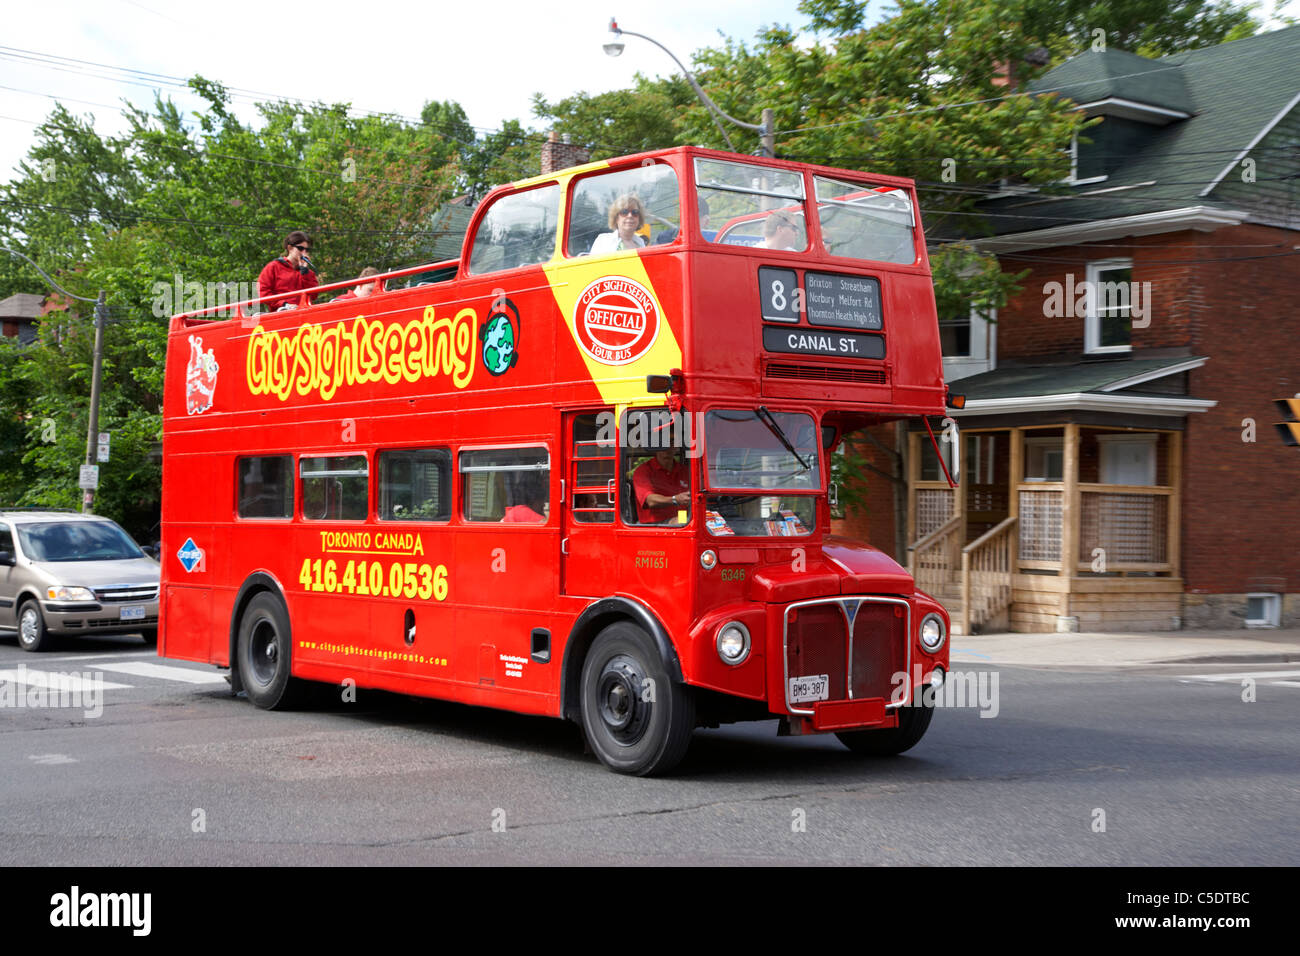 old routemaster double decker citysightseeing tour bus toronto ontario canada Stock Photo